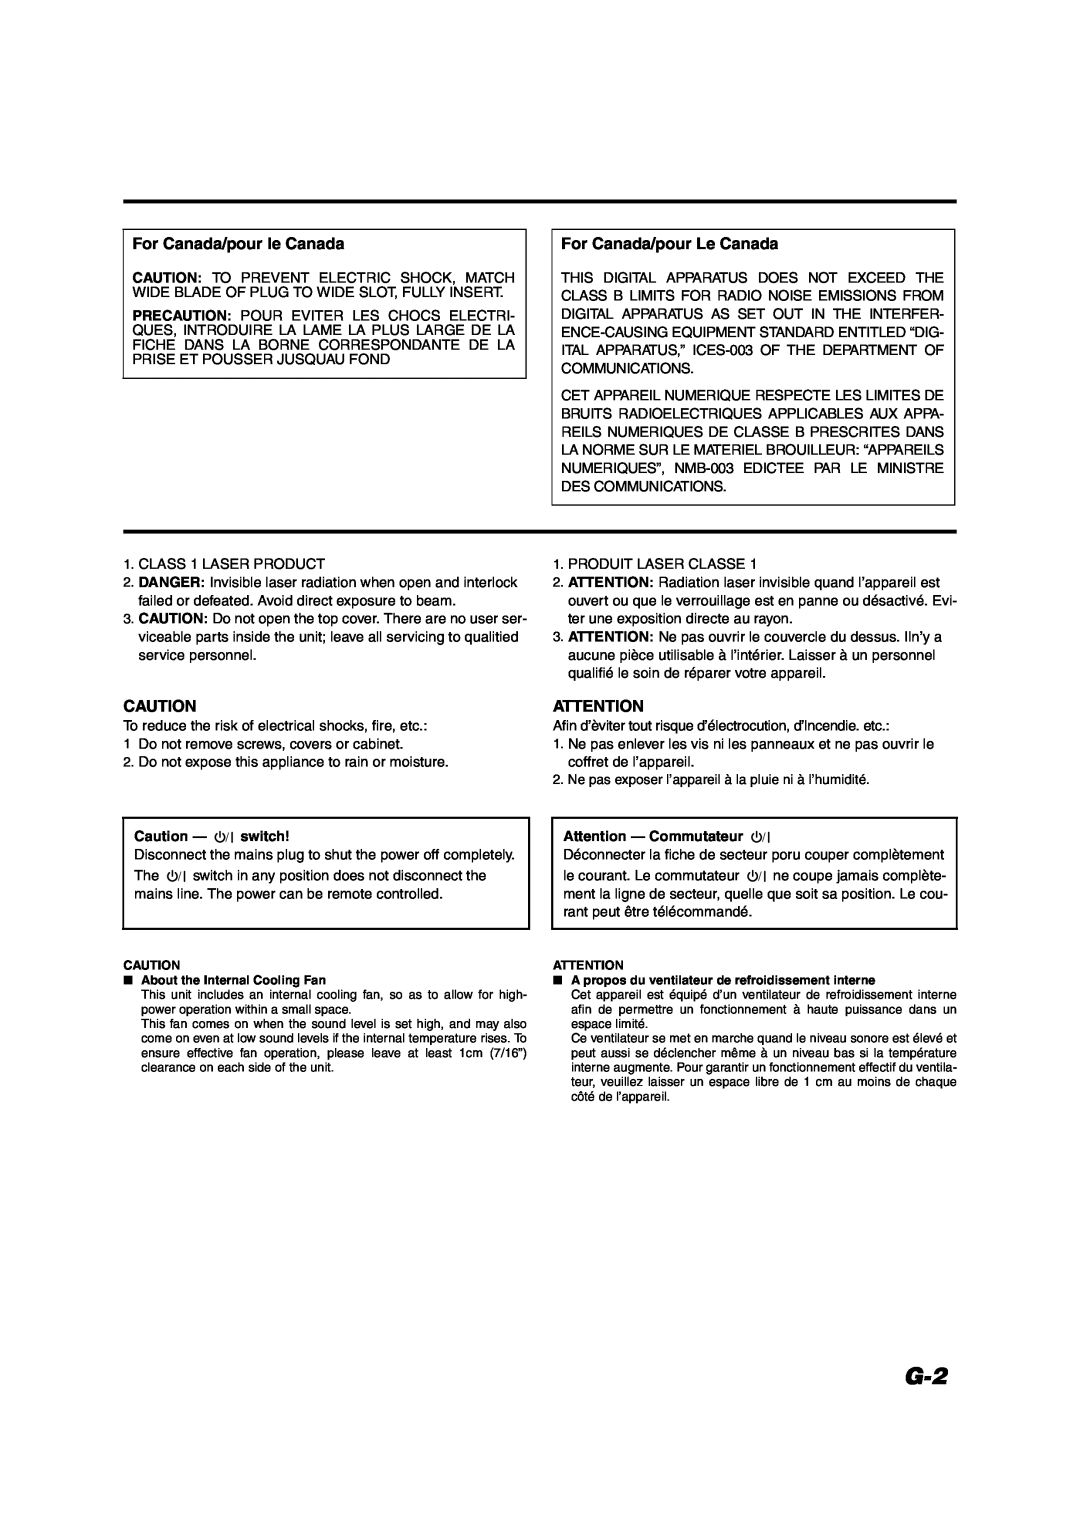 JVC VS-DT6/VS-DT8 manual For Canada/pour le Canada, For Canada/pour Le Canada, Caution - switch, Attention - Commutateur 